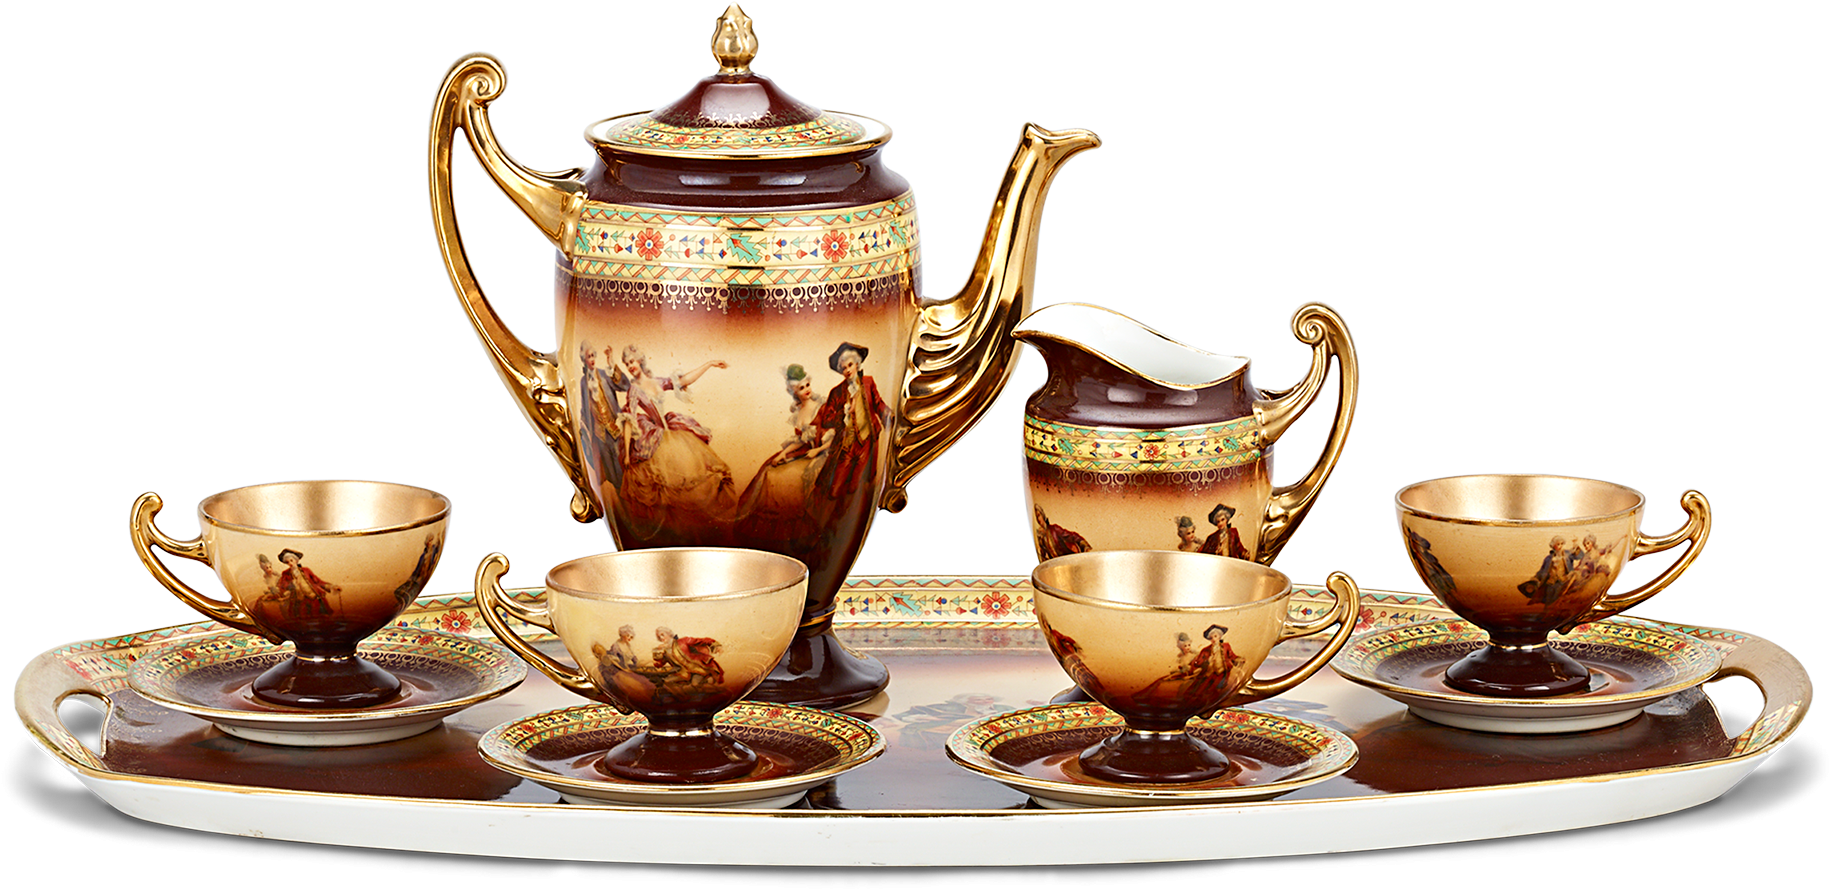 बोहेमियन चीनी मिट्टी के बरतन चाय का सेट